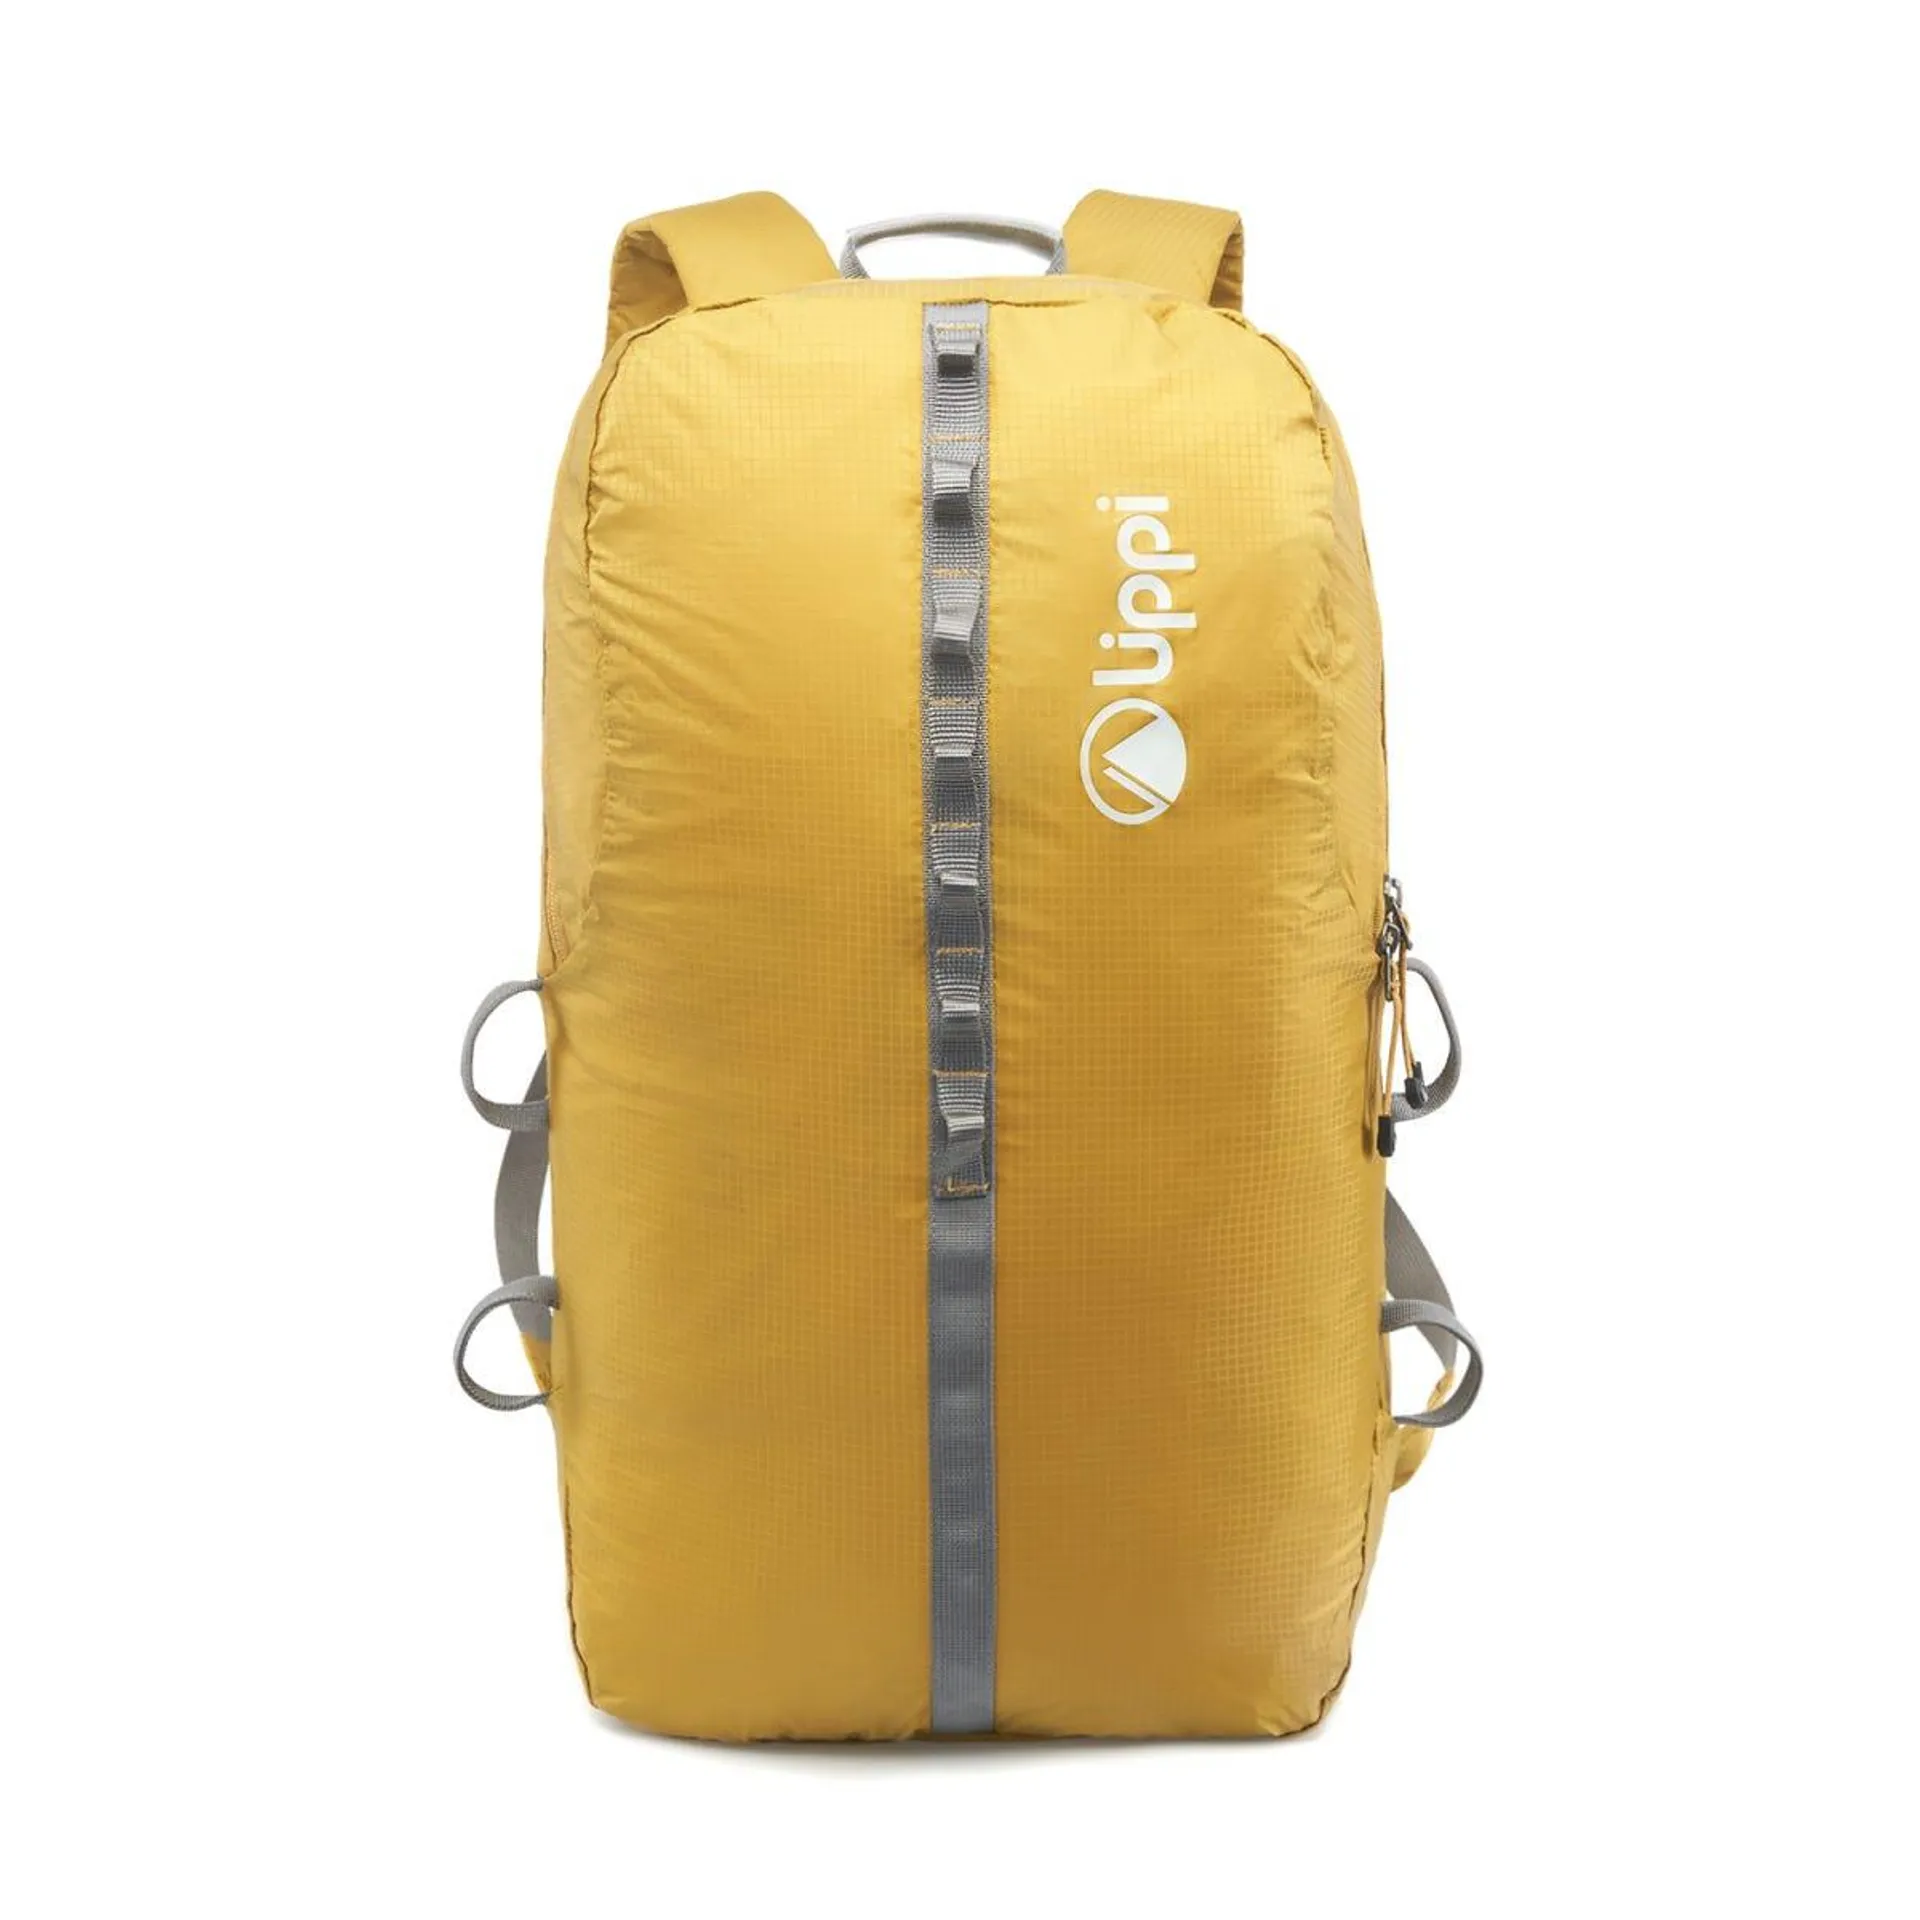 Mochila Unisex B-Light 10 Backpack Mostaza 10 Lts Lippi